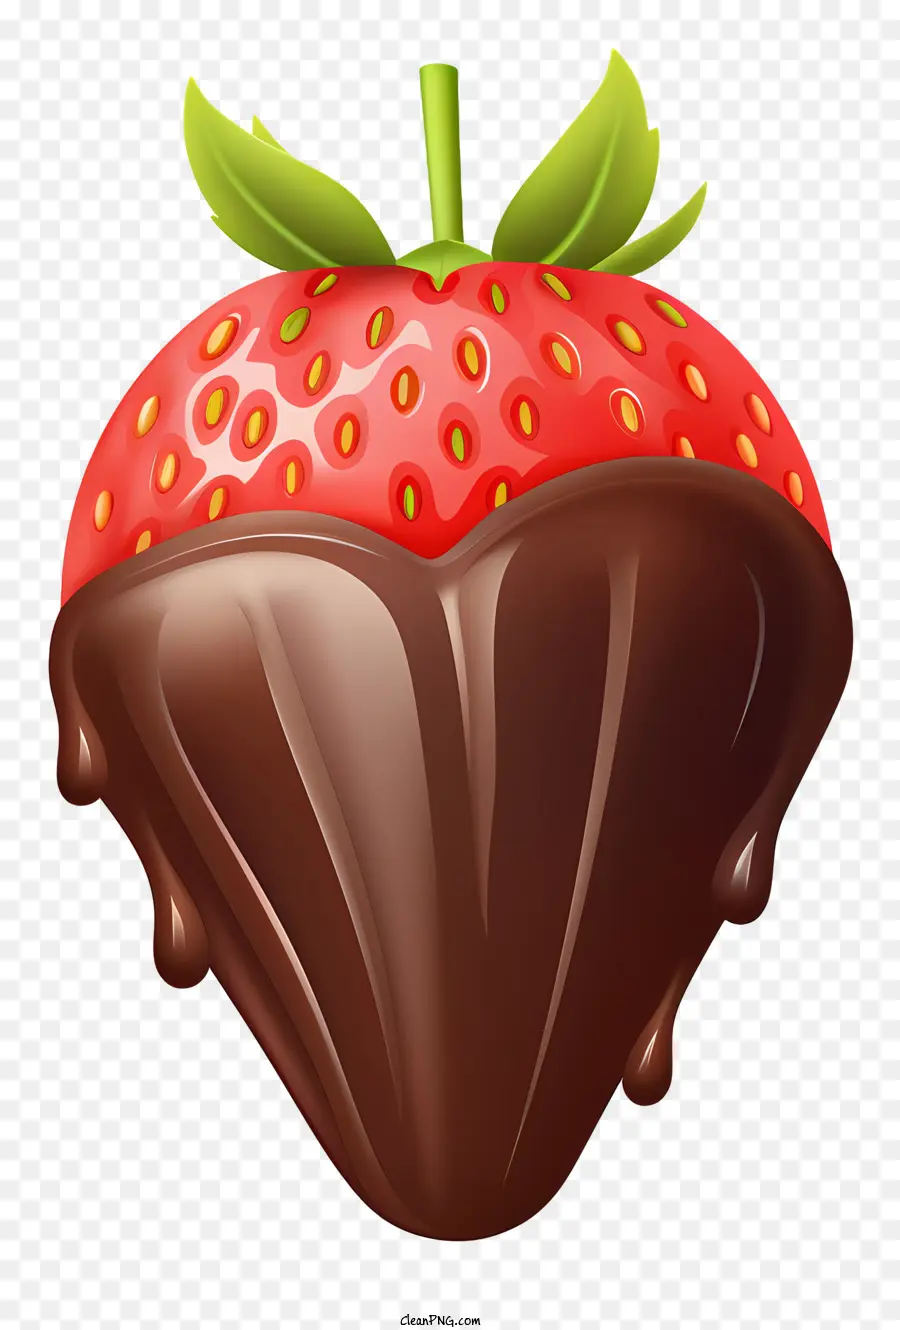 Schokoladenbedeckte Erdbeer -Schokoladensauce geschmolzene Schokoladen -Erdbeere mit Schokoladenblatt oder Stiel auf Erdbeer - Realistisches Bild einer Erdbeere mit Schokoladenbedeckung